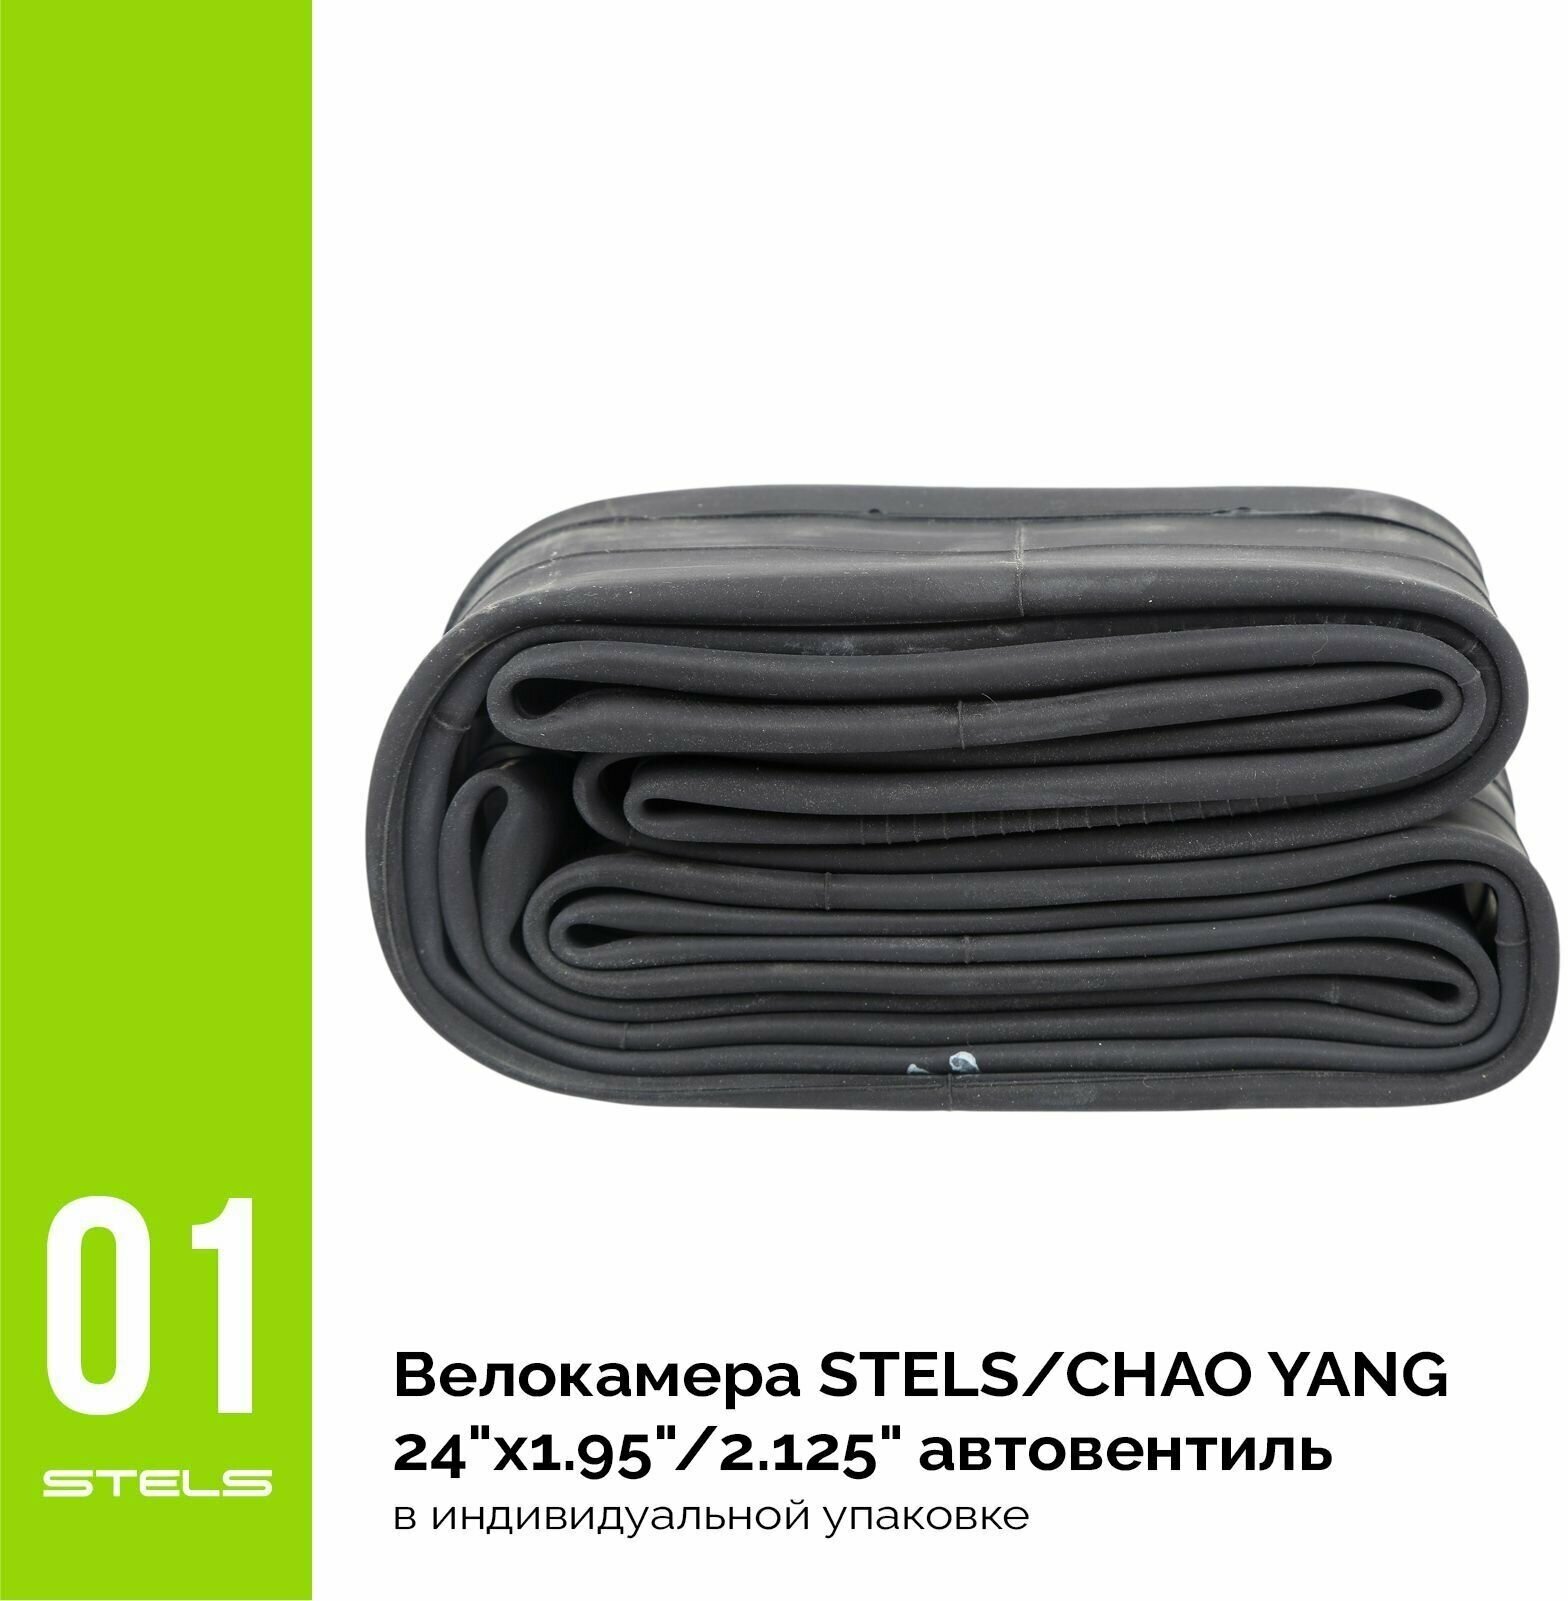 Велокамера STELS/CHAO YANG 24"x1.95"/2.125" автониппель, в индивидуальной упаковке SuperHIT+